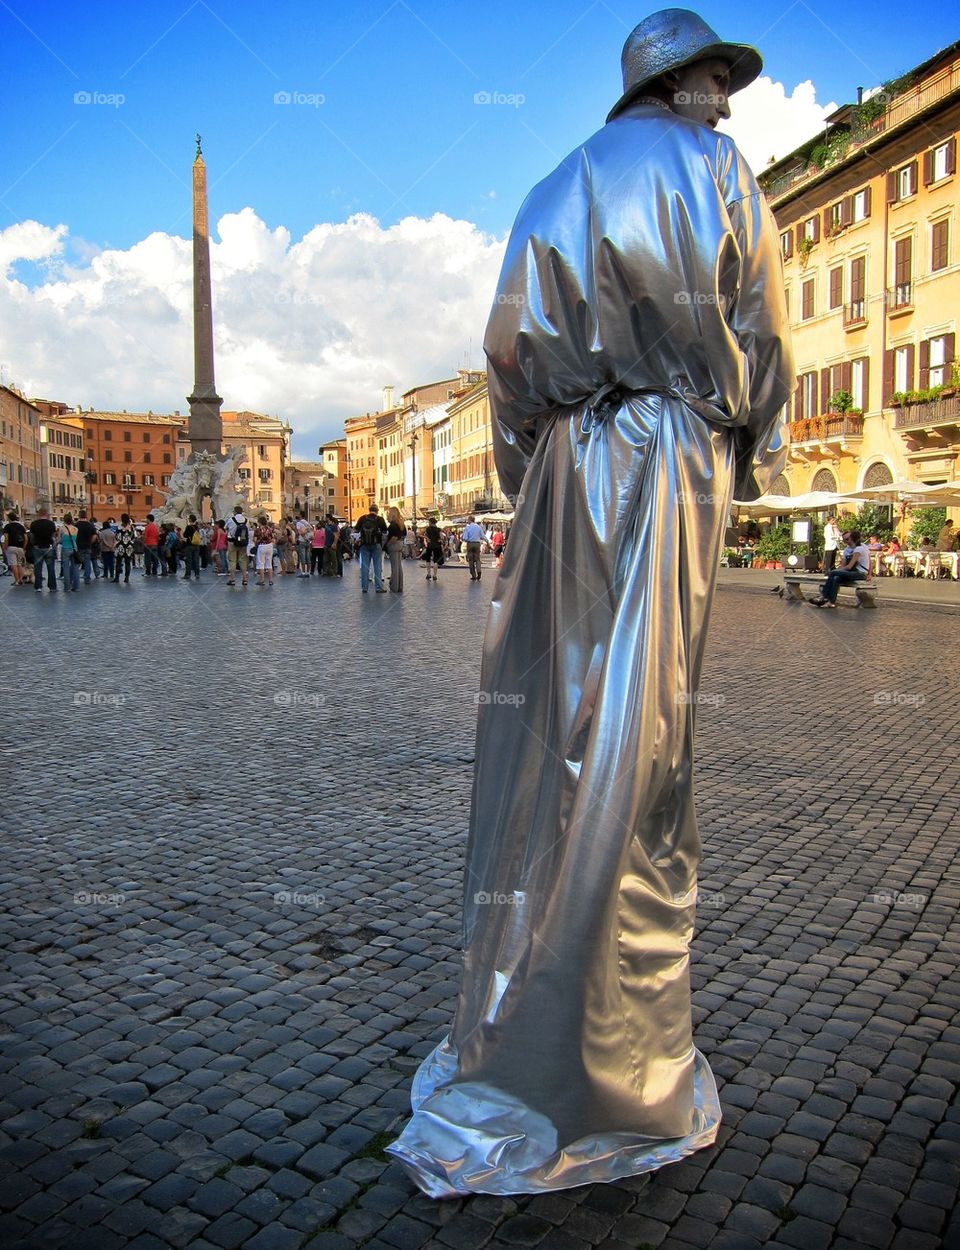 Tin Man in Rome